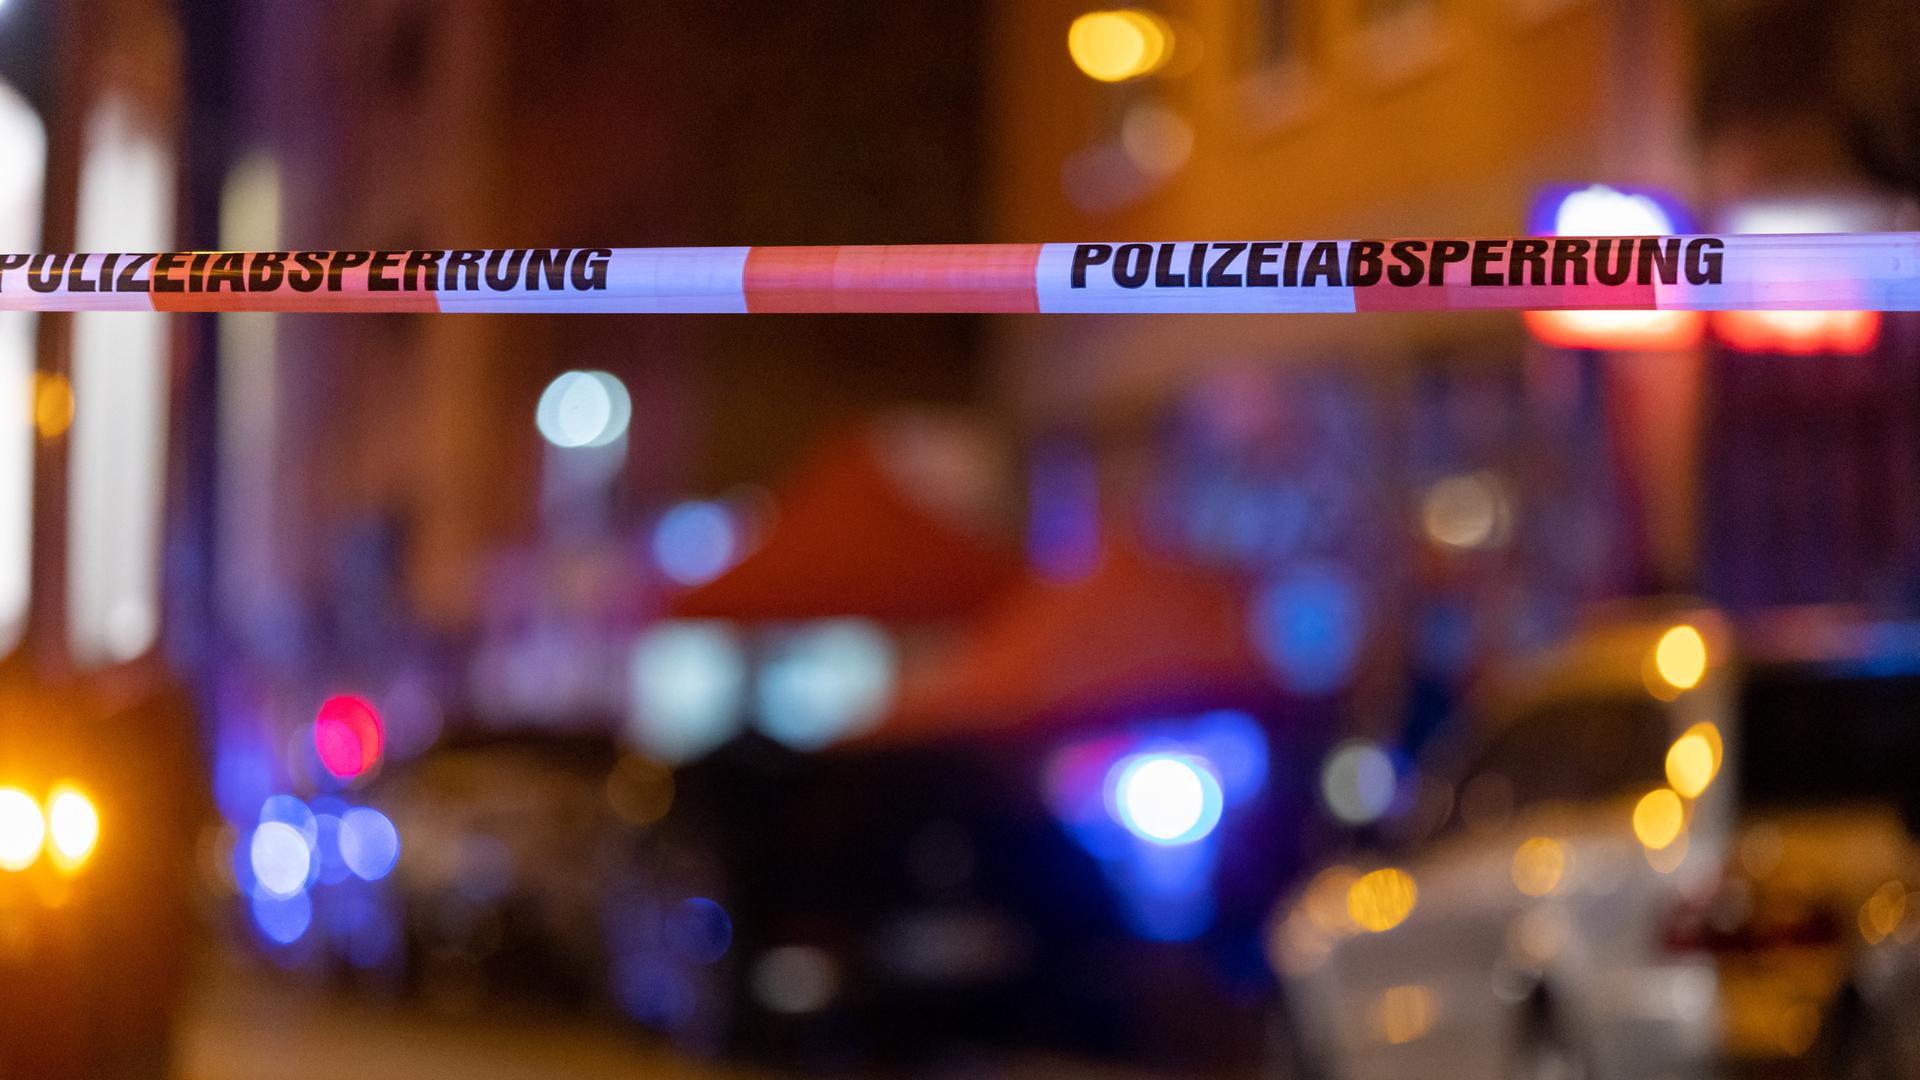 Ein Absperrband der Polizei hängt vor einem Tatort, nachdem hier Schüsse gefallen waren. Im Hintergrund stehen Polizisten neben einer Straßenbahn.